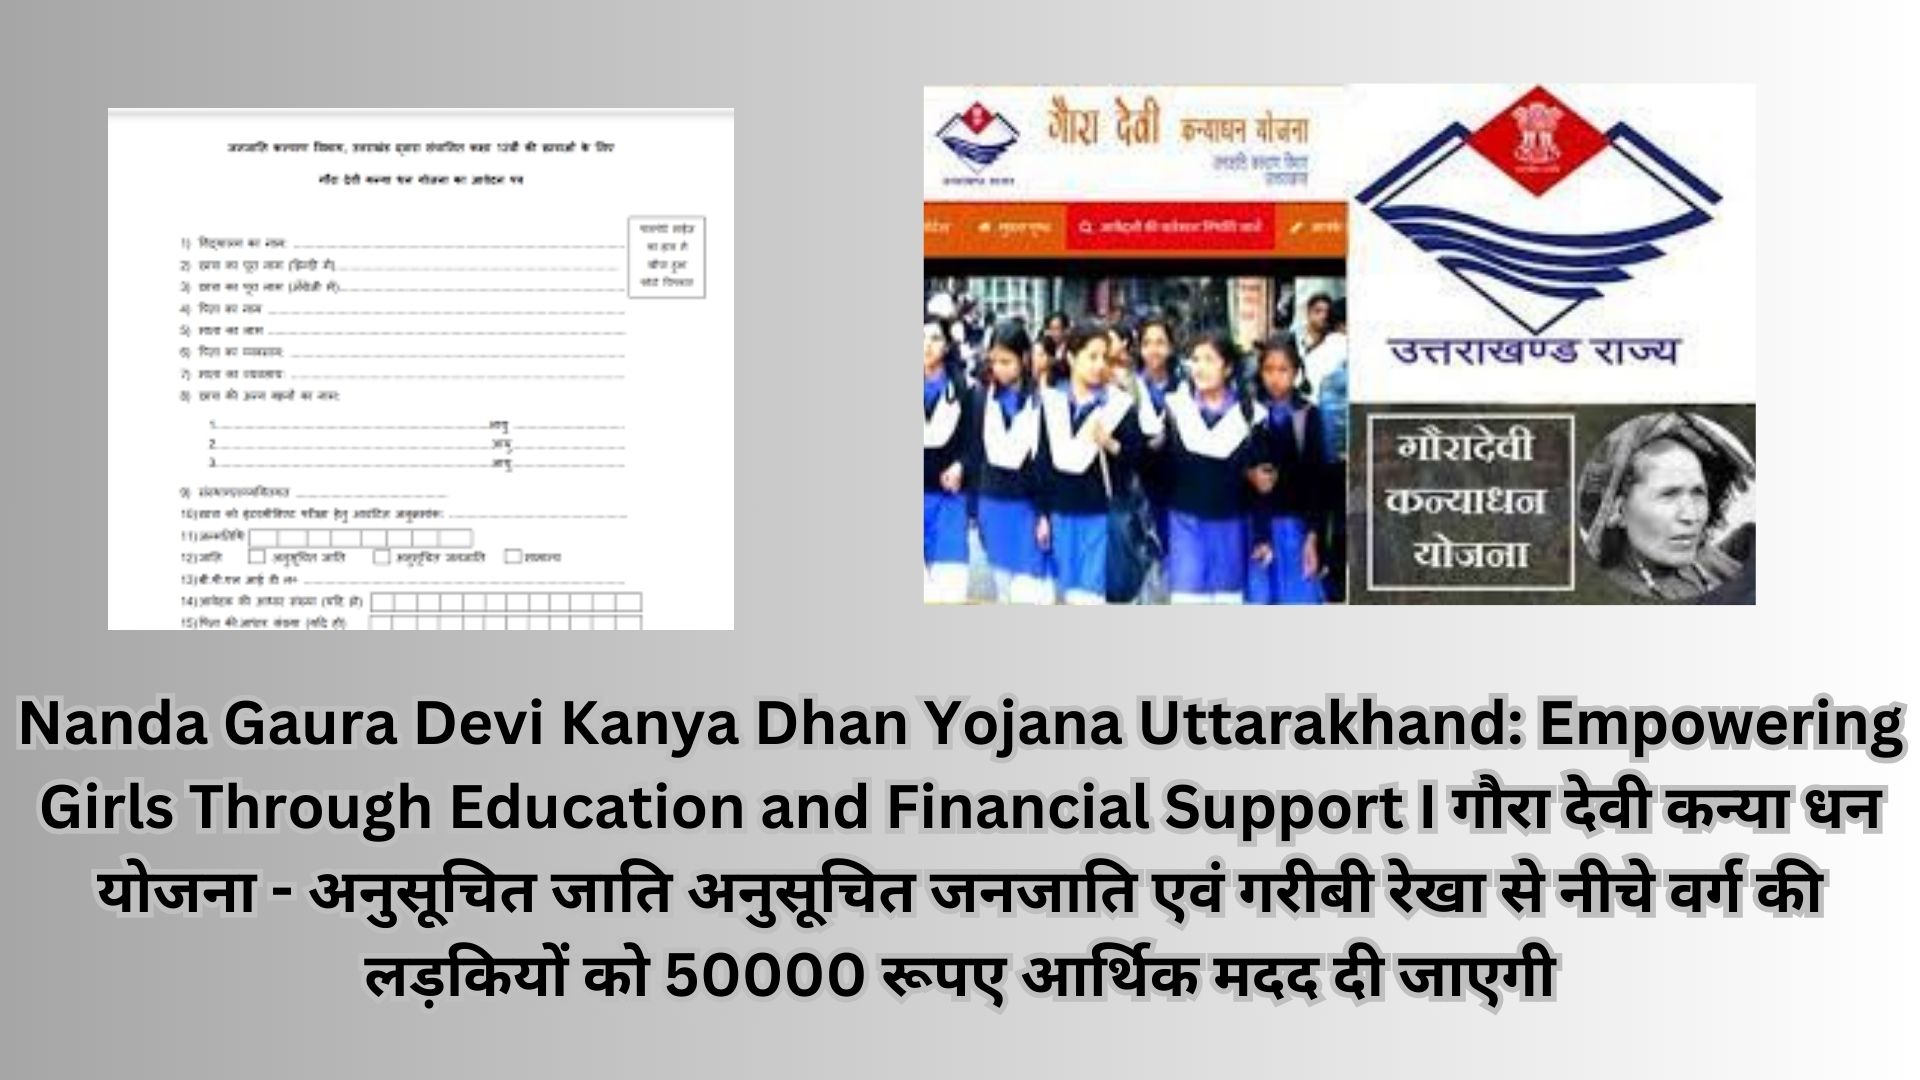 Nanda Gaura Devi Kanya Dhan Yojana Uttarakhand: Empowering Girls Through Education and Financial Support I गौरा देवी कन्या धन योजना - अनुसूचित जाति अनुसूचित जनजाति एवं गरीबी रेखा से नीचे वर्ग की लड़कियों को 50000 रूपए आर्थिक मदद दी जाएगी